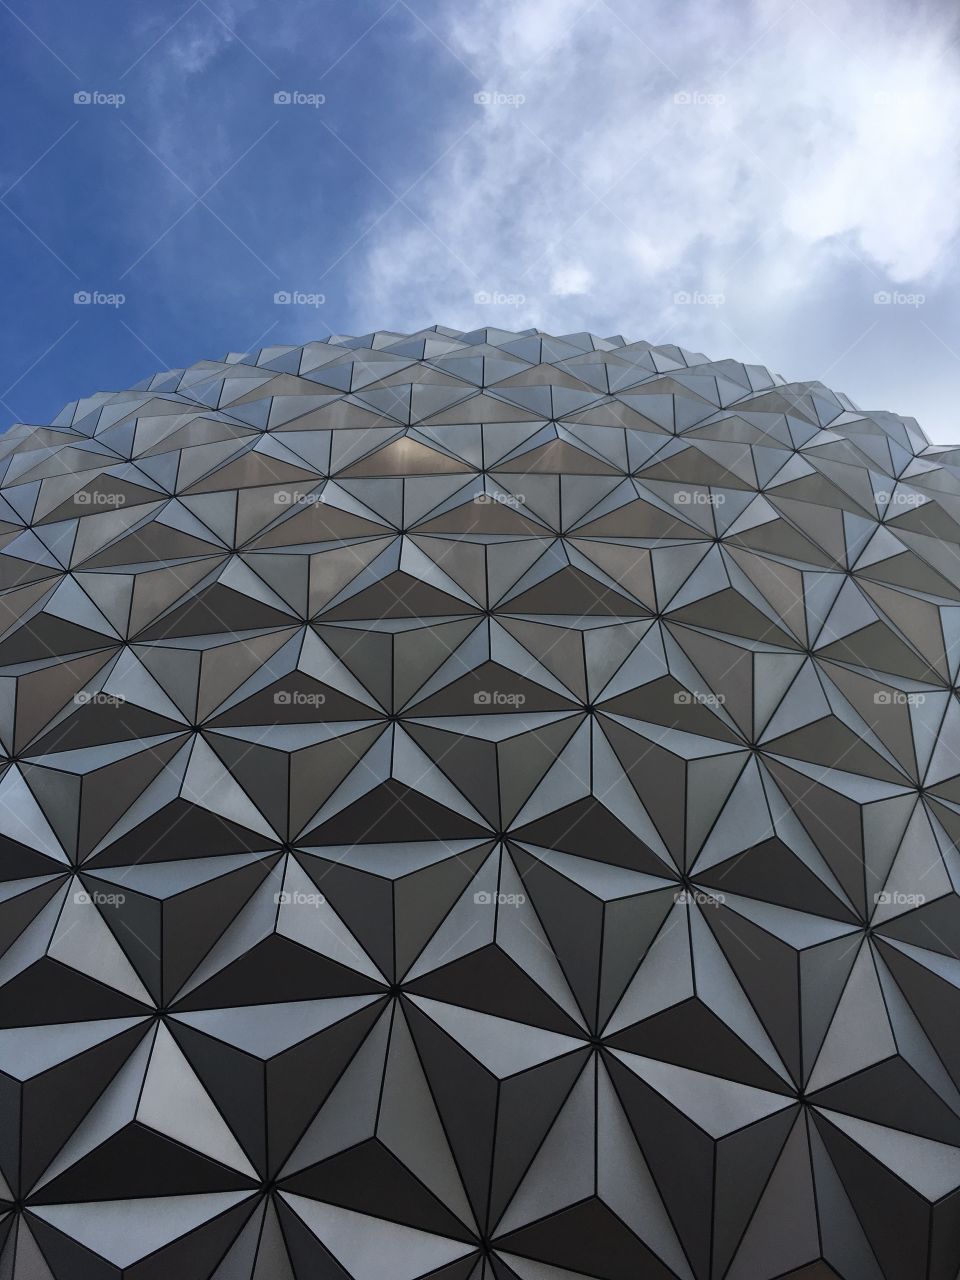 Epcot Ball at Disney World in Orlando, Florida